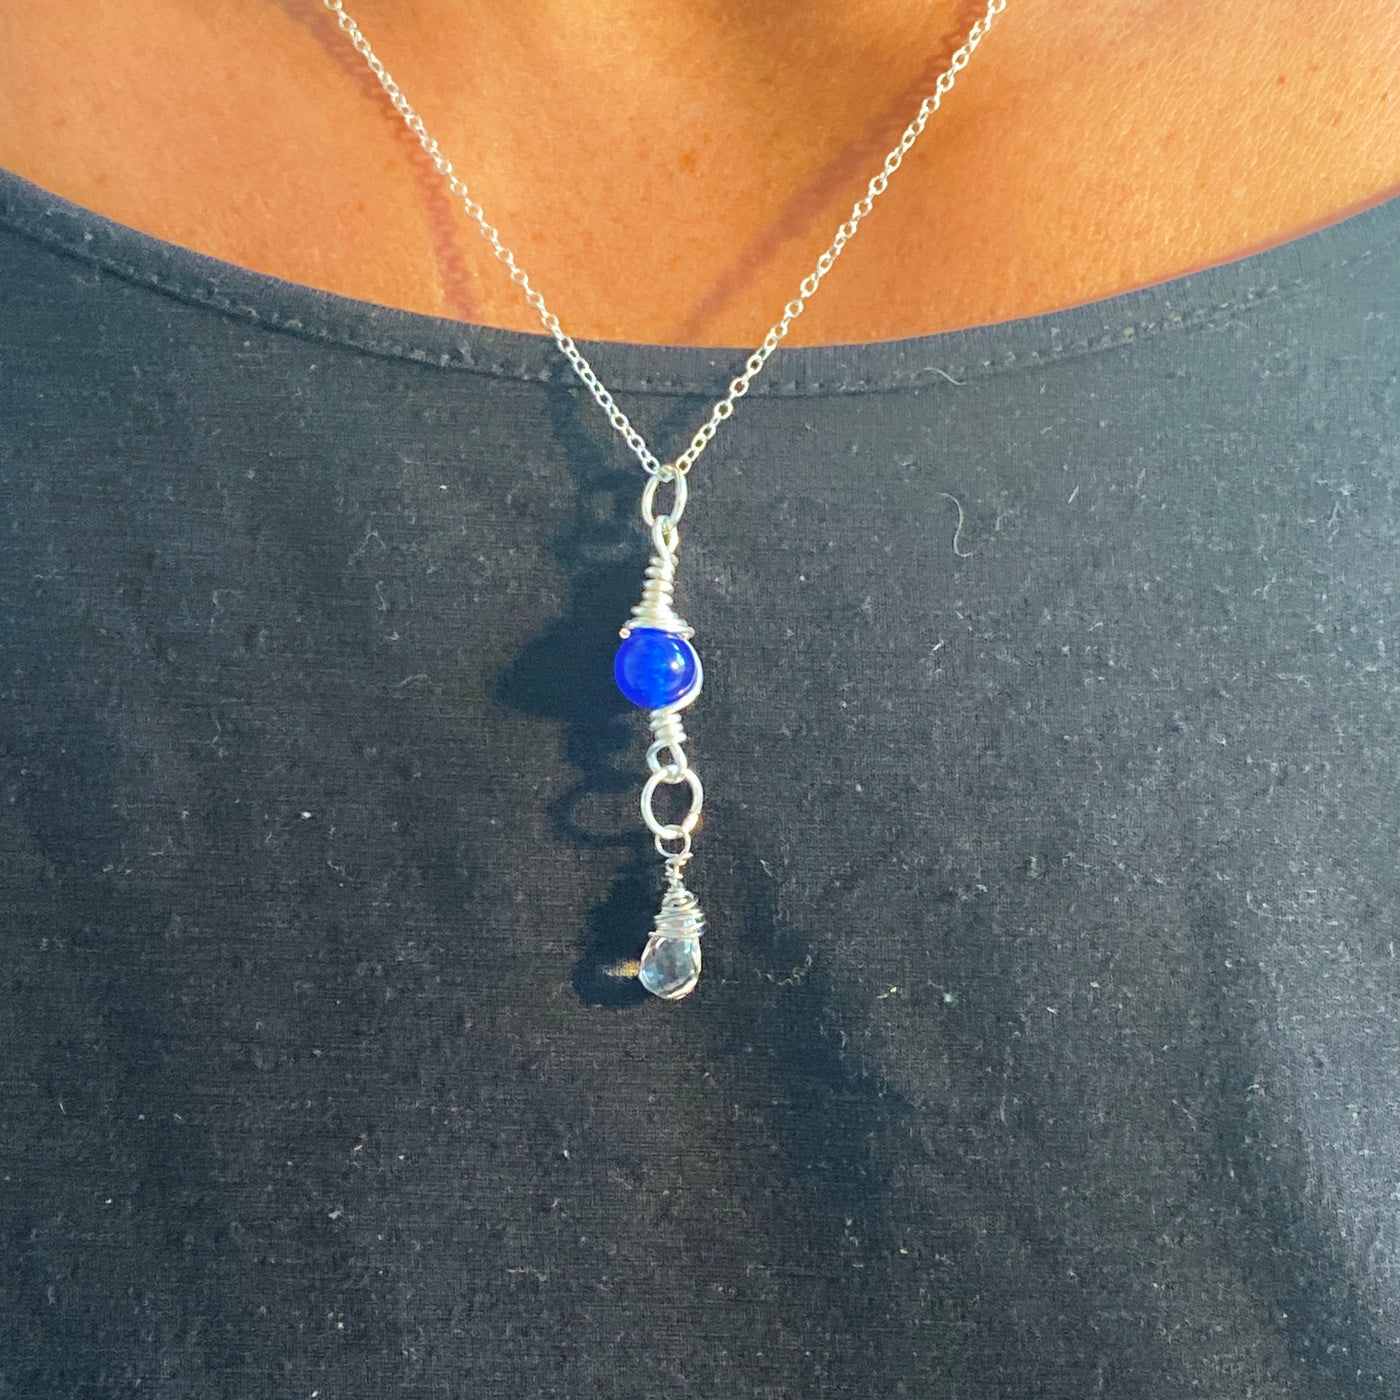 Halskette: Blauer Howlith und Kristall-Briolette an der Kette